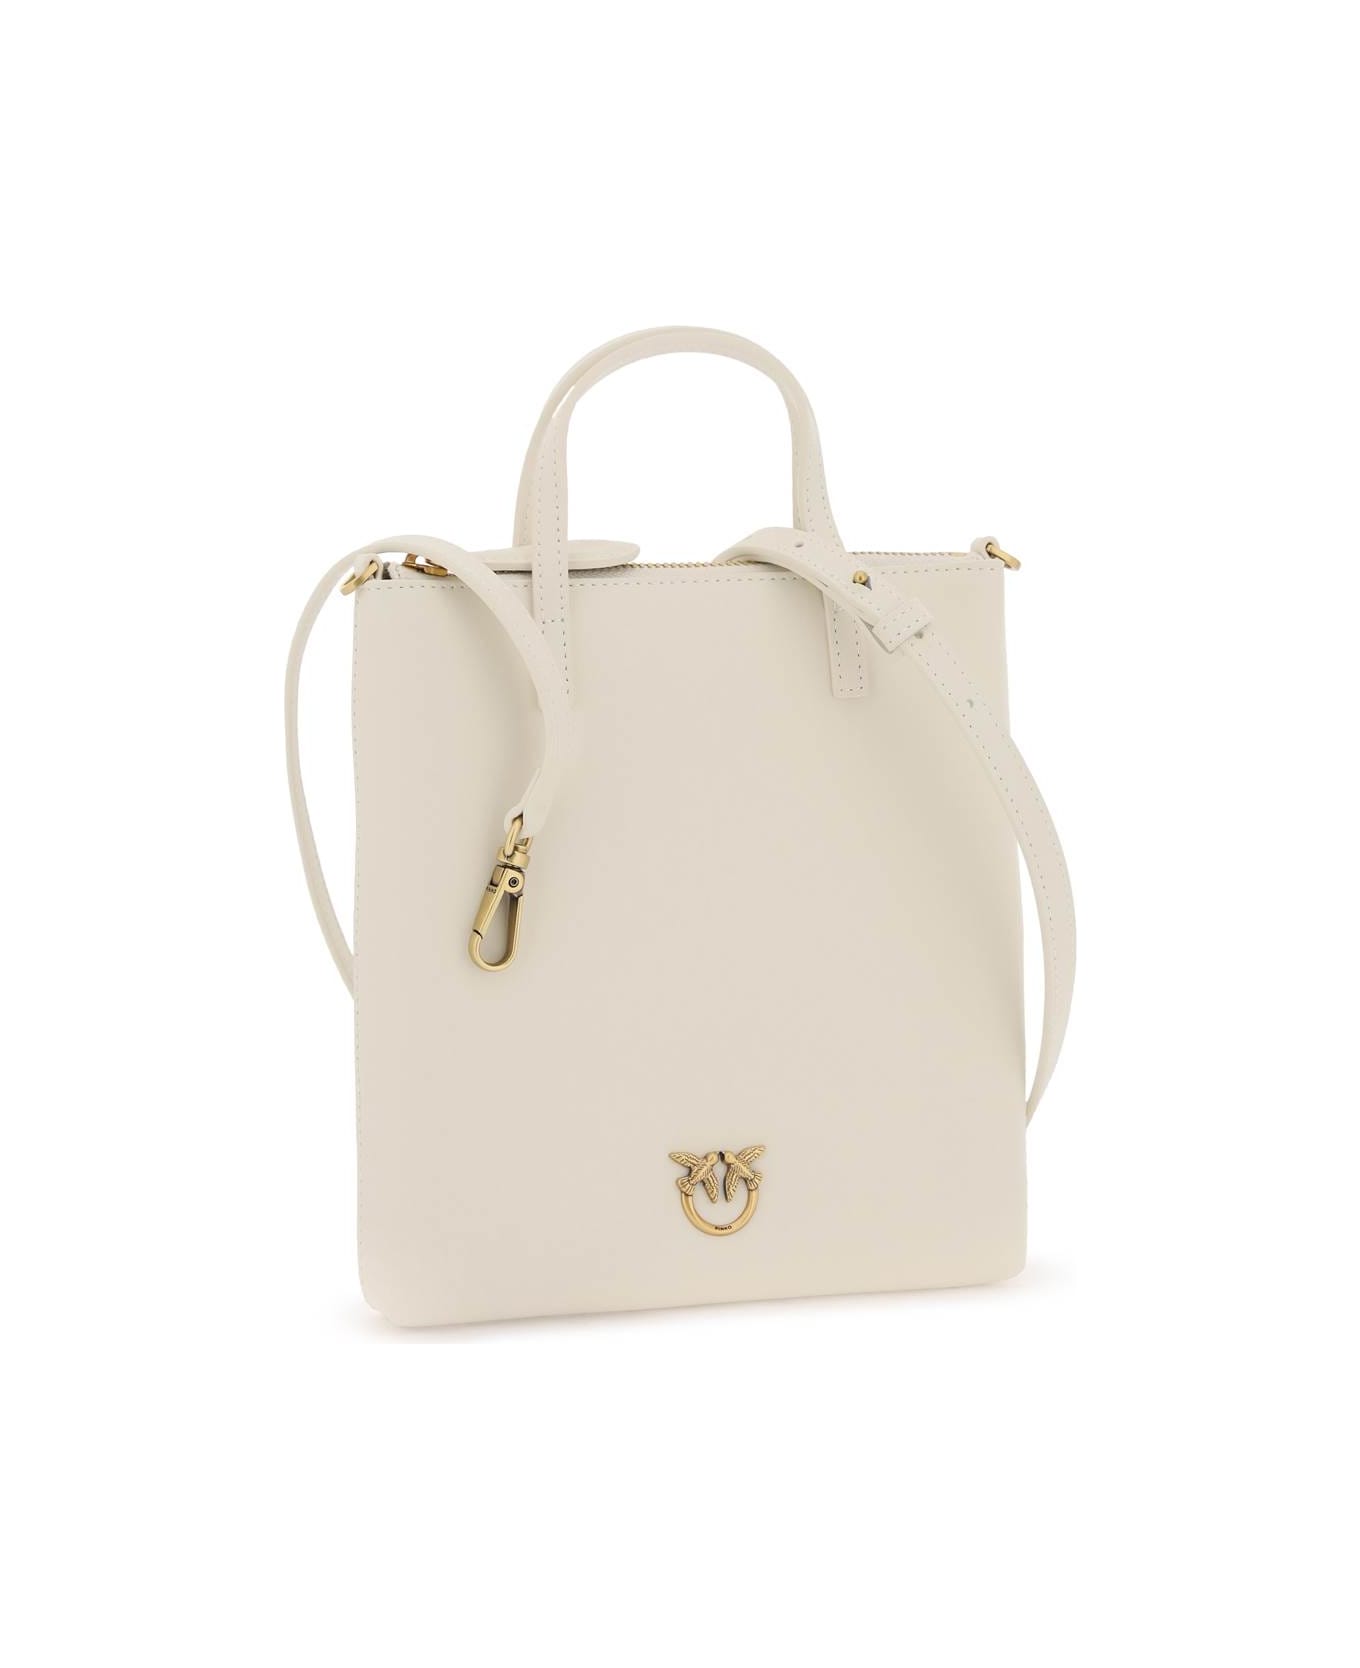 Pinko Leather Mini Tote Bag - BIANCO SETA ANTIQUE GOLD (White)